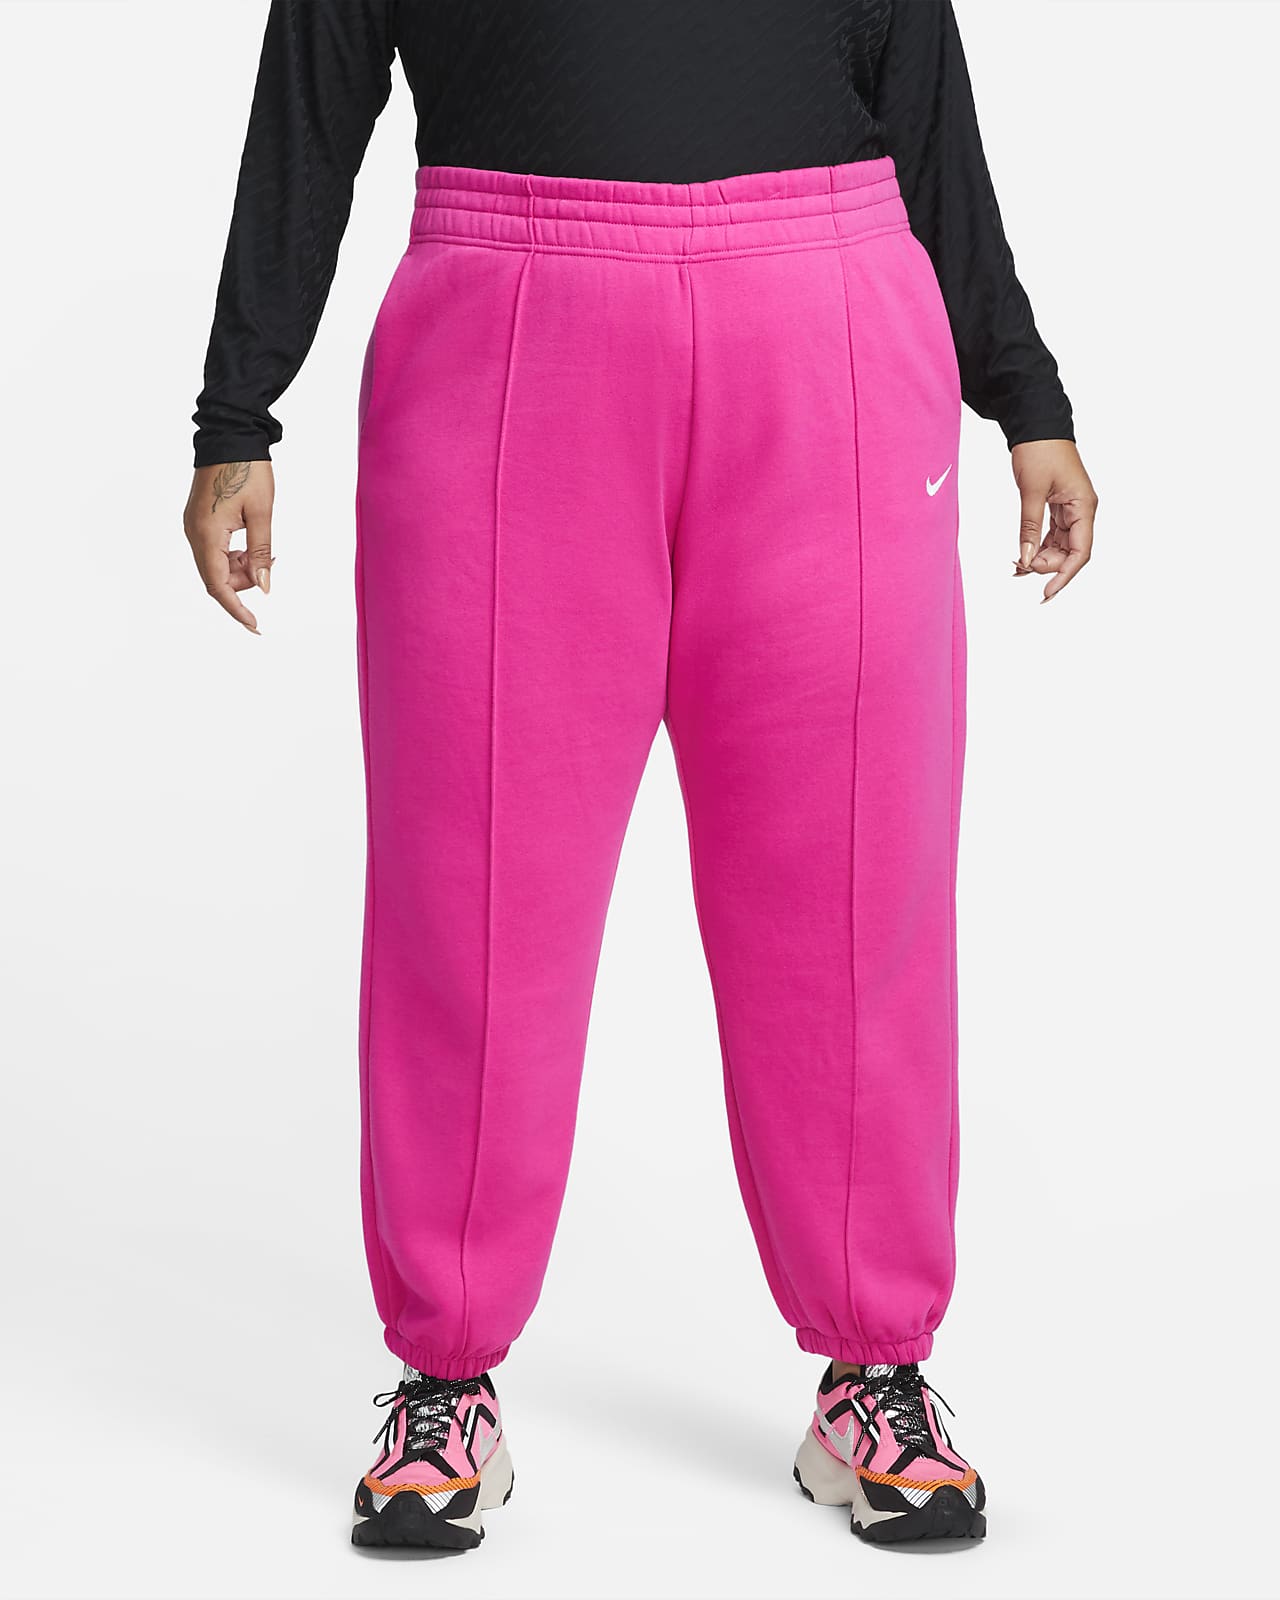 Vibrar Acera Más que nada Nike Sportswear Trend Women's Fleece Pants (Plus Size). Nike.com